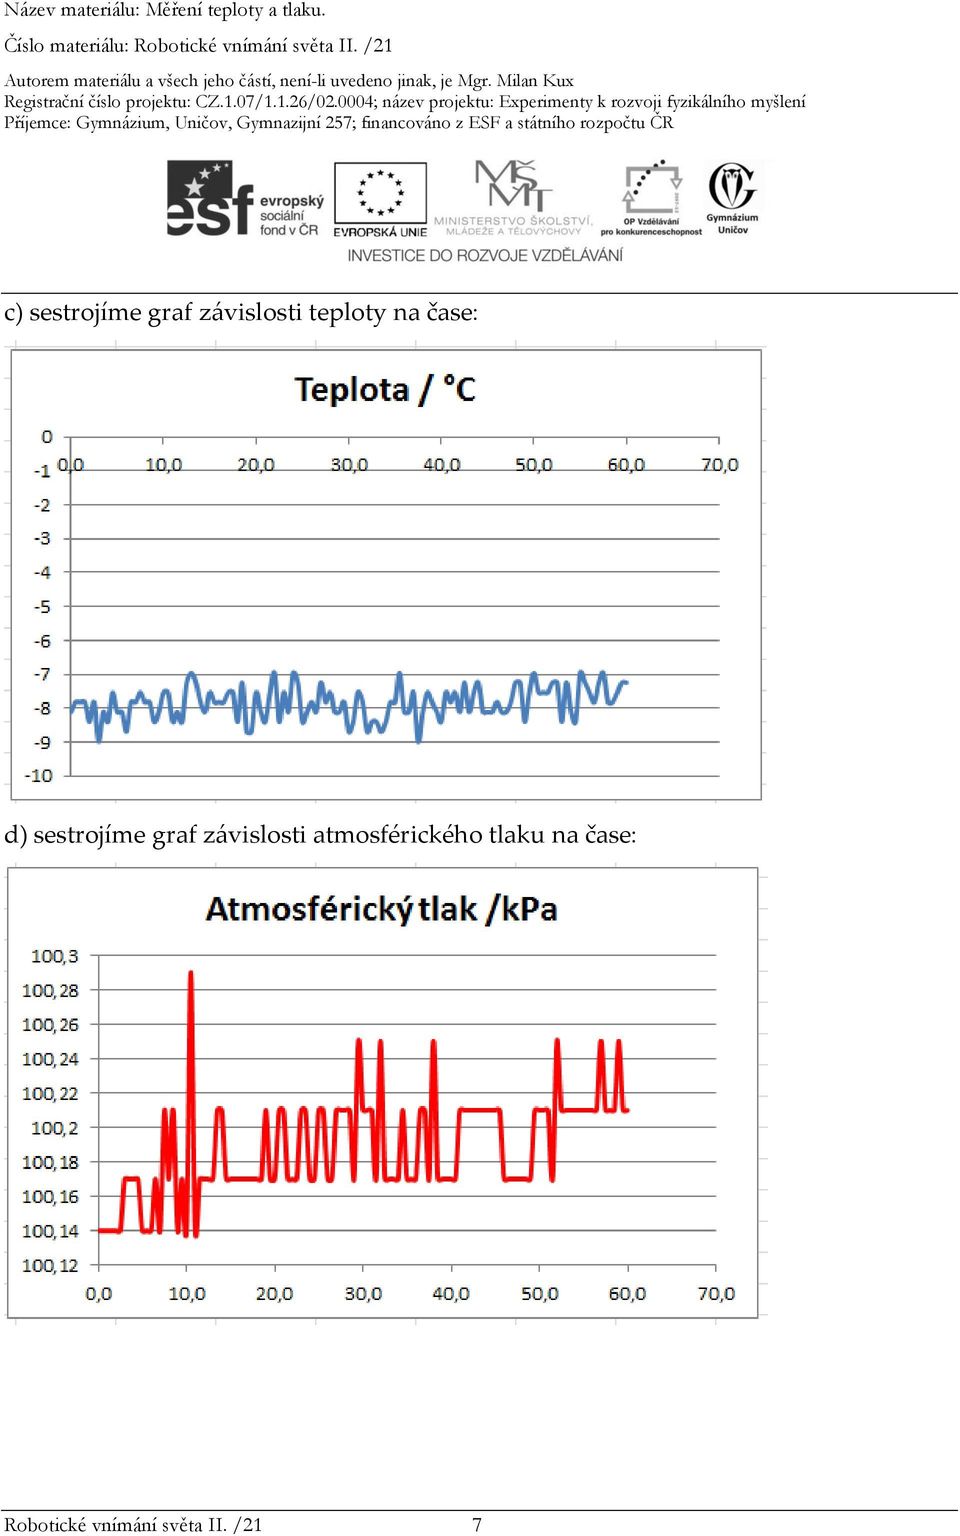 graf závislosti atmosférického